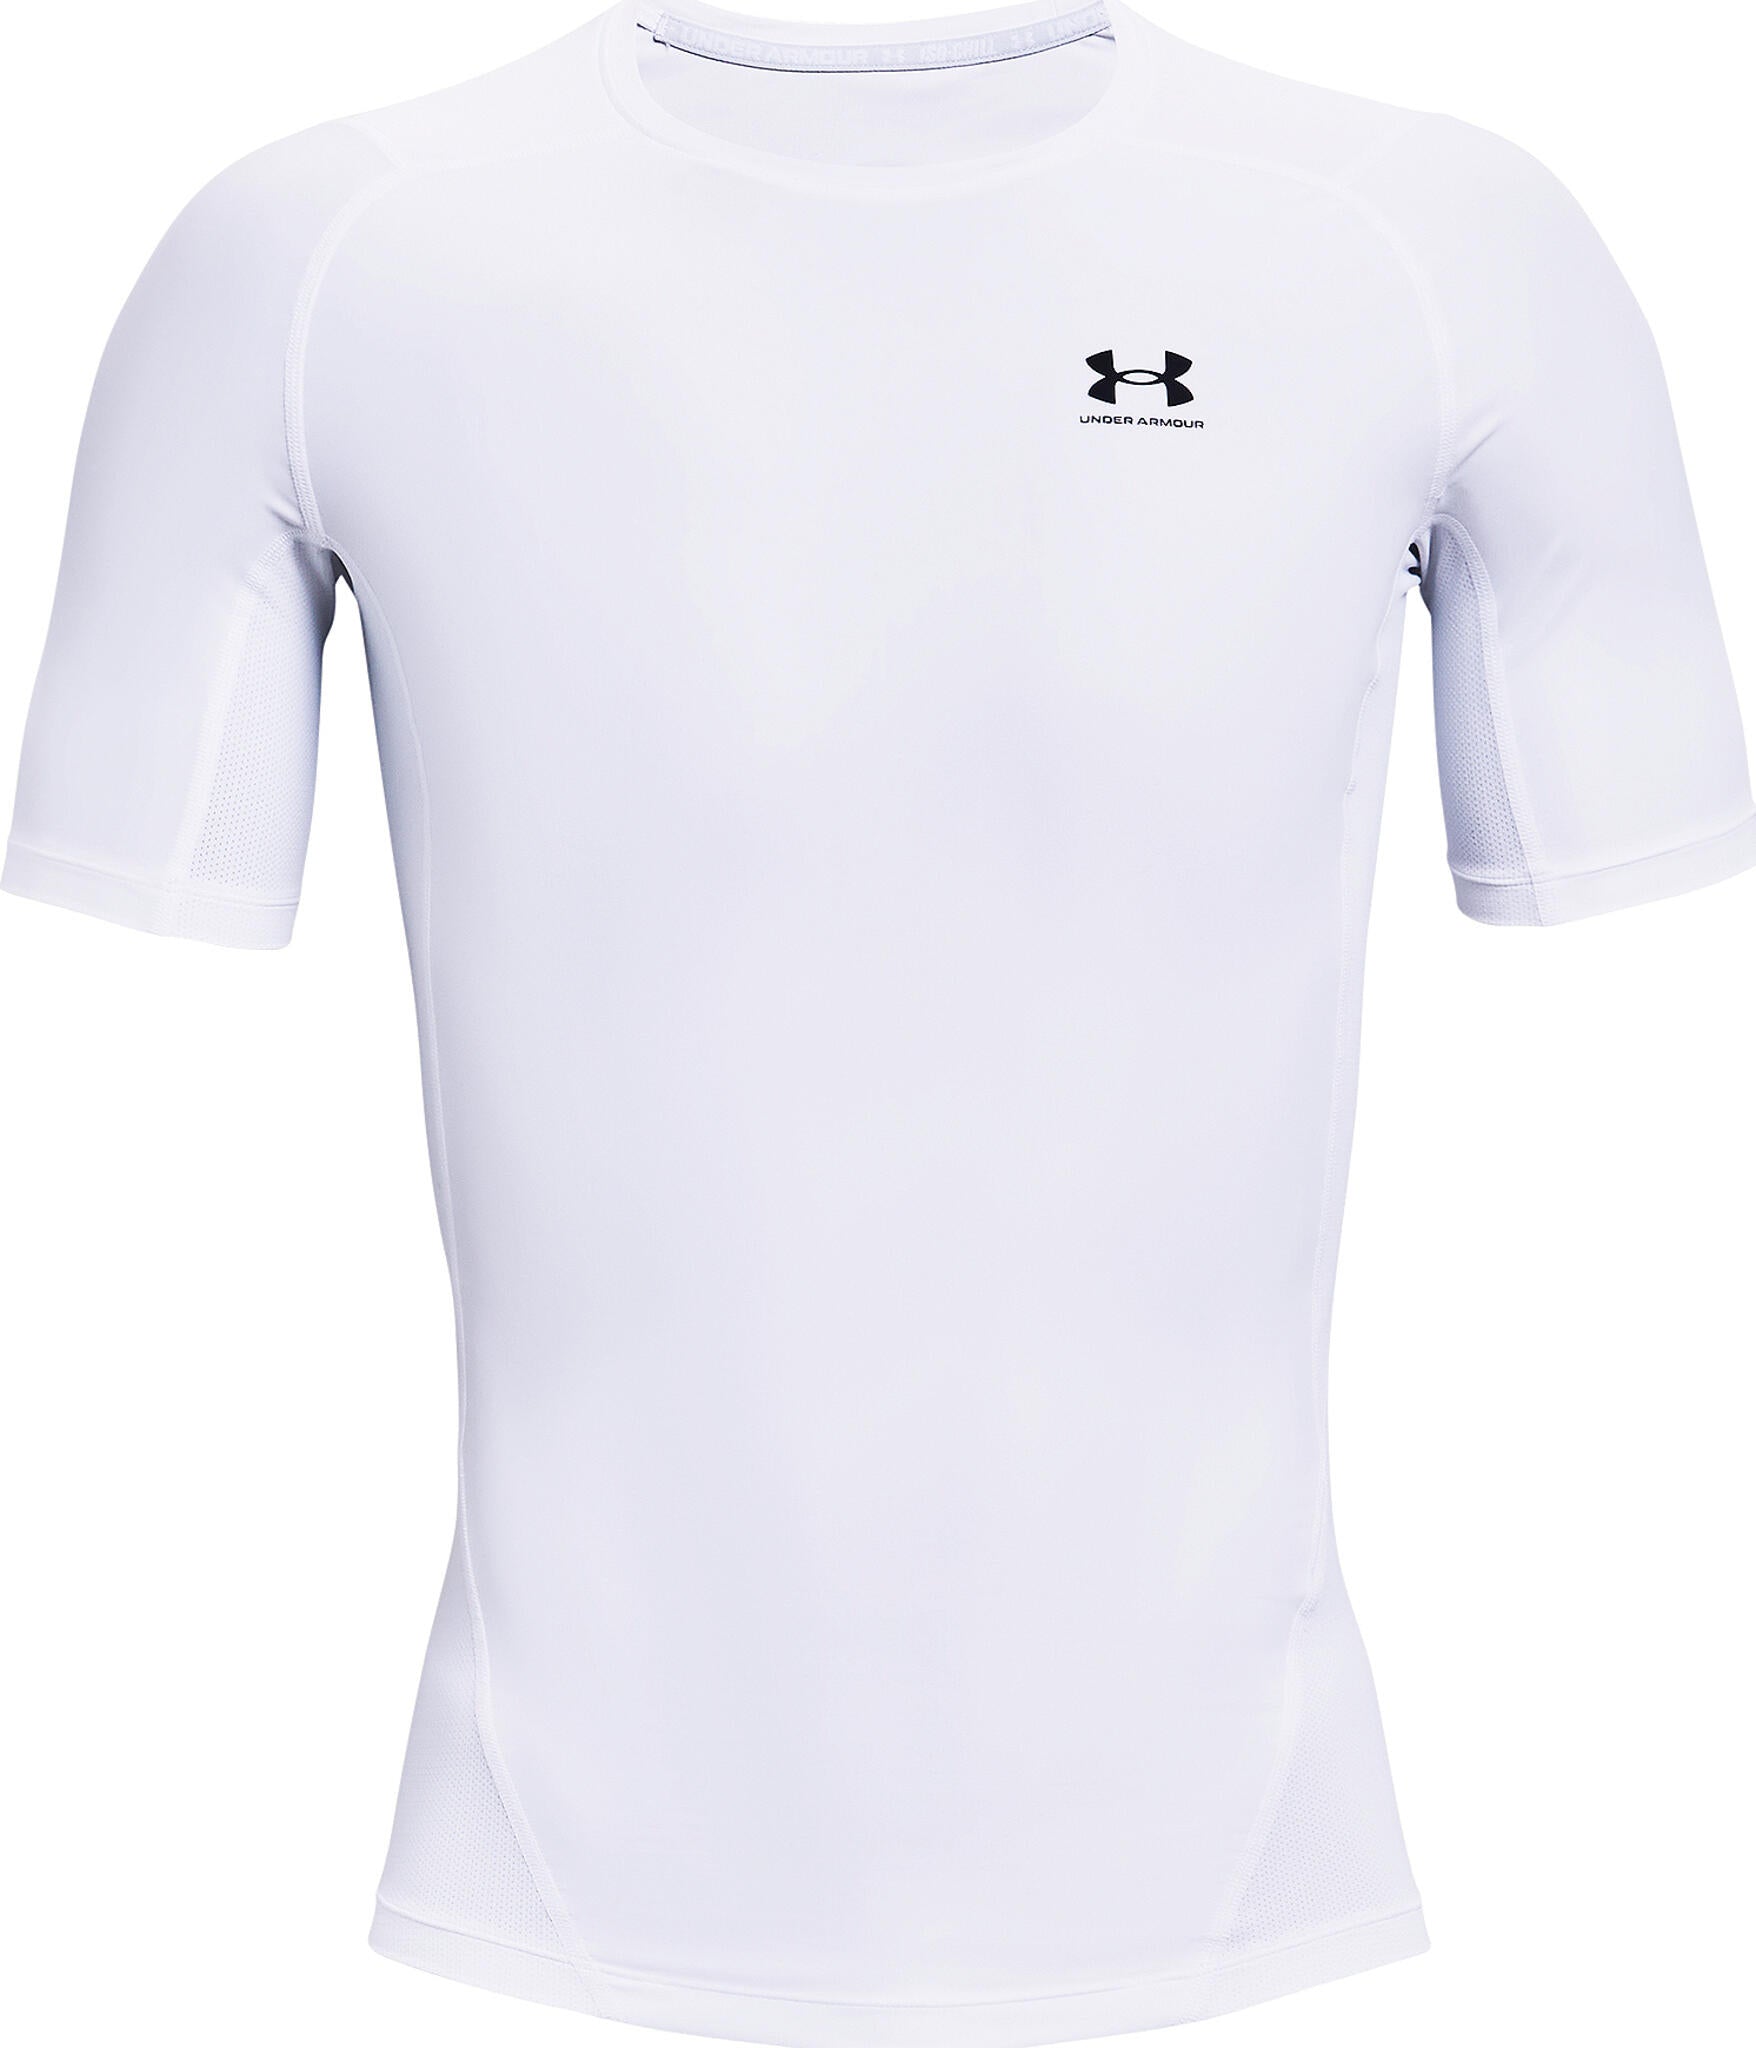 Under Armour Heat Gear Isochill Short Sleeve T-shirt - Men's | Altitude ...